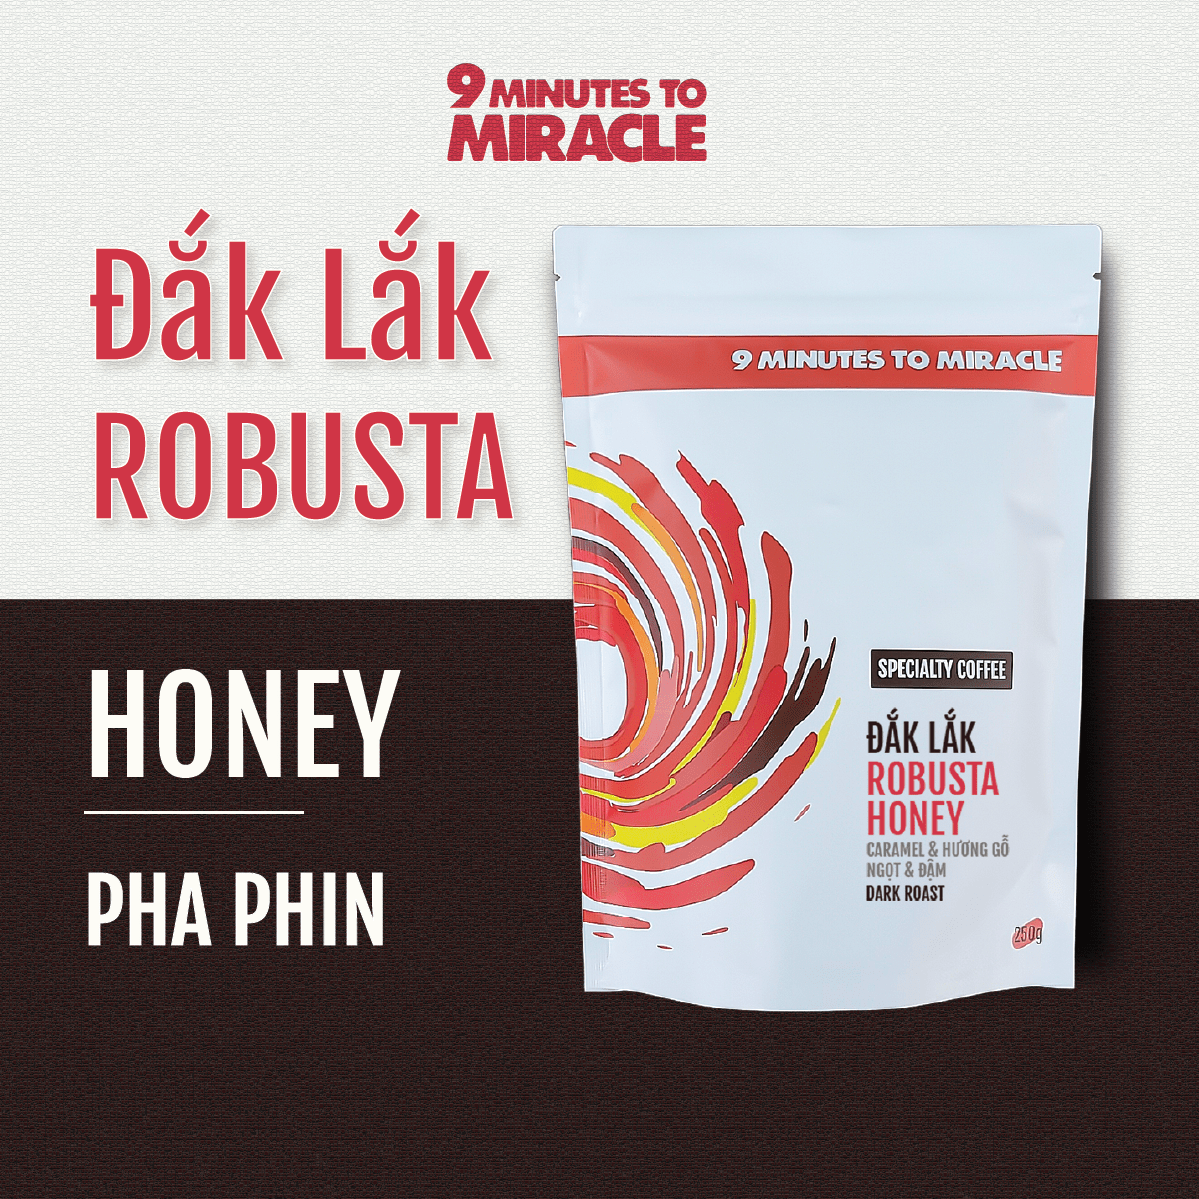 Cà Phê Pha Phin Robusta Honey Đắk Lắk Cà phê rang xay nguyên chất phù hợp